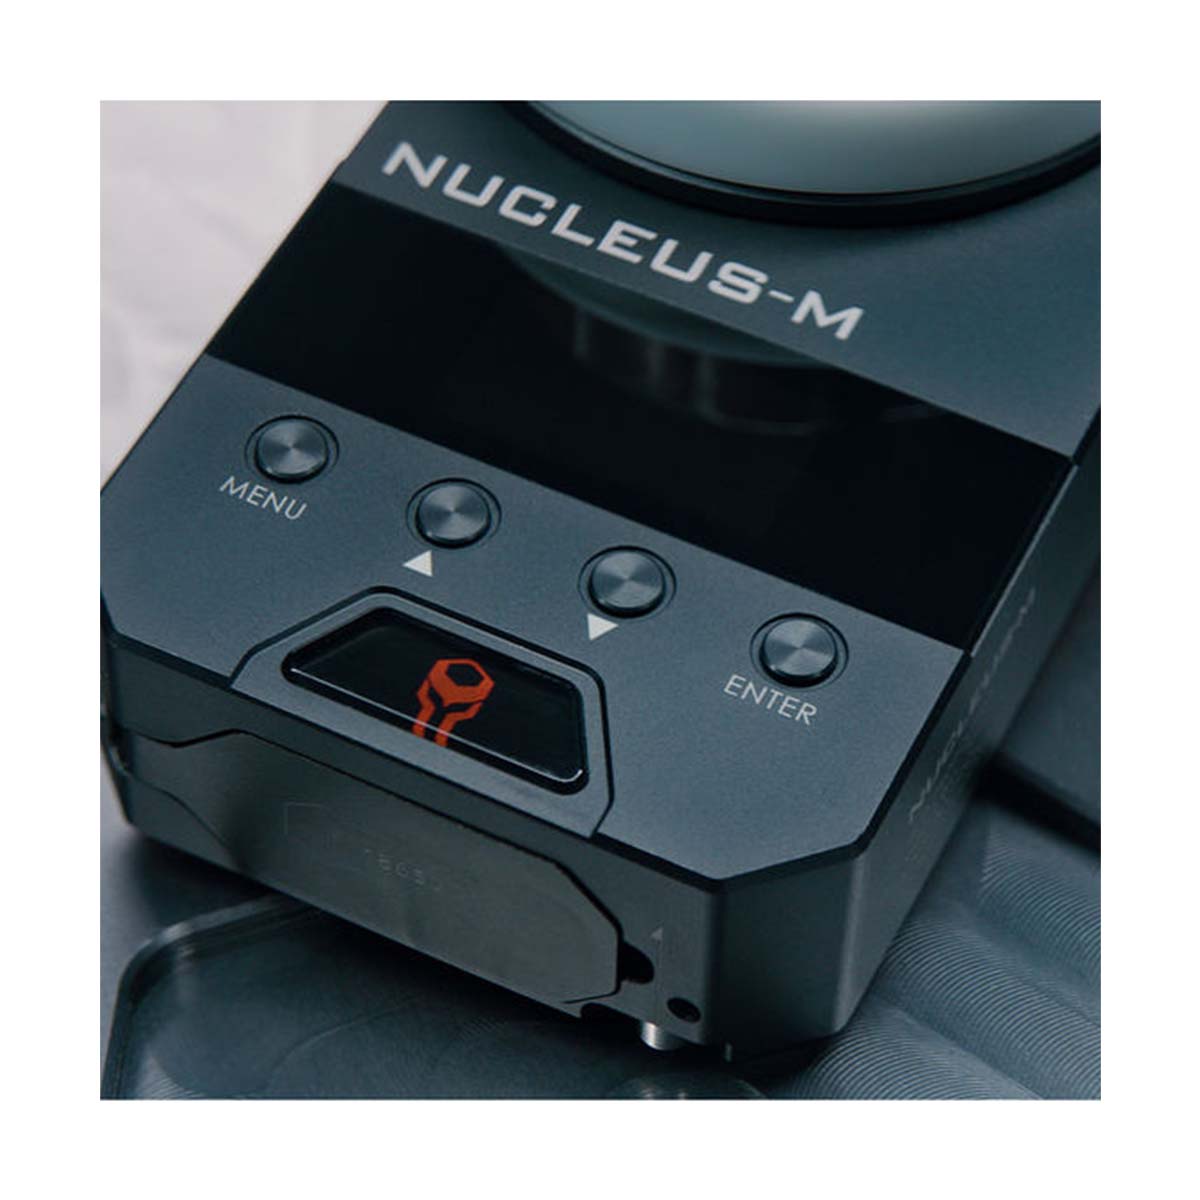 Tilta Nucleus-M Wireless Lens Control System